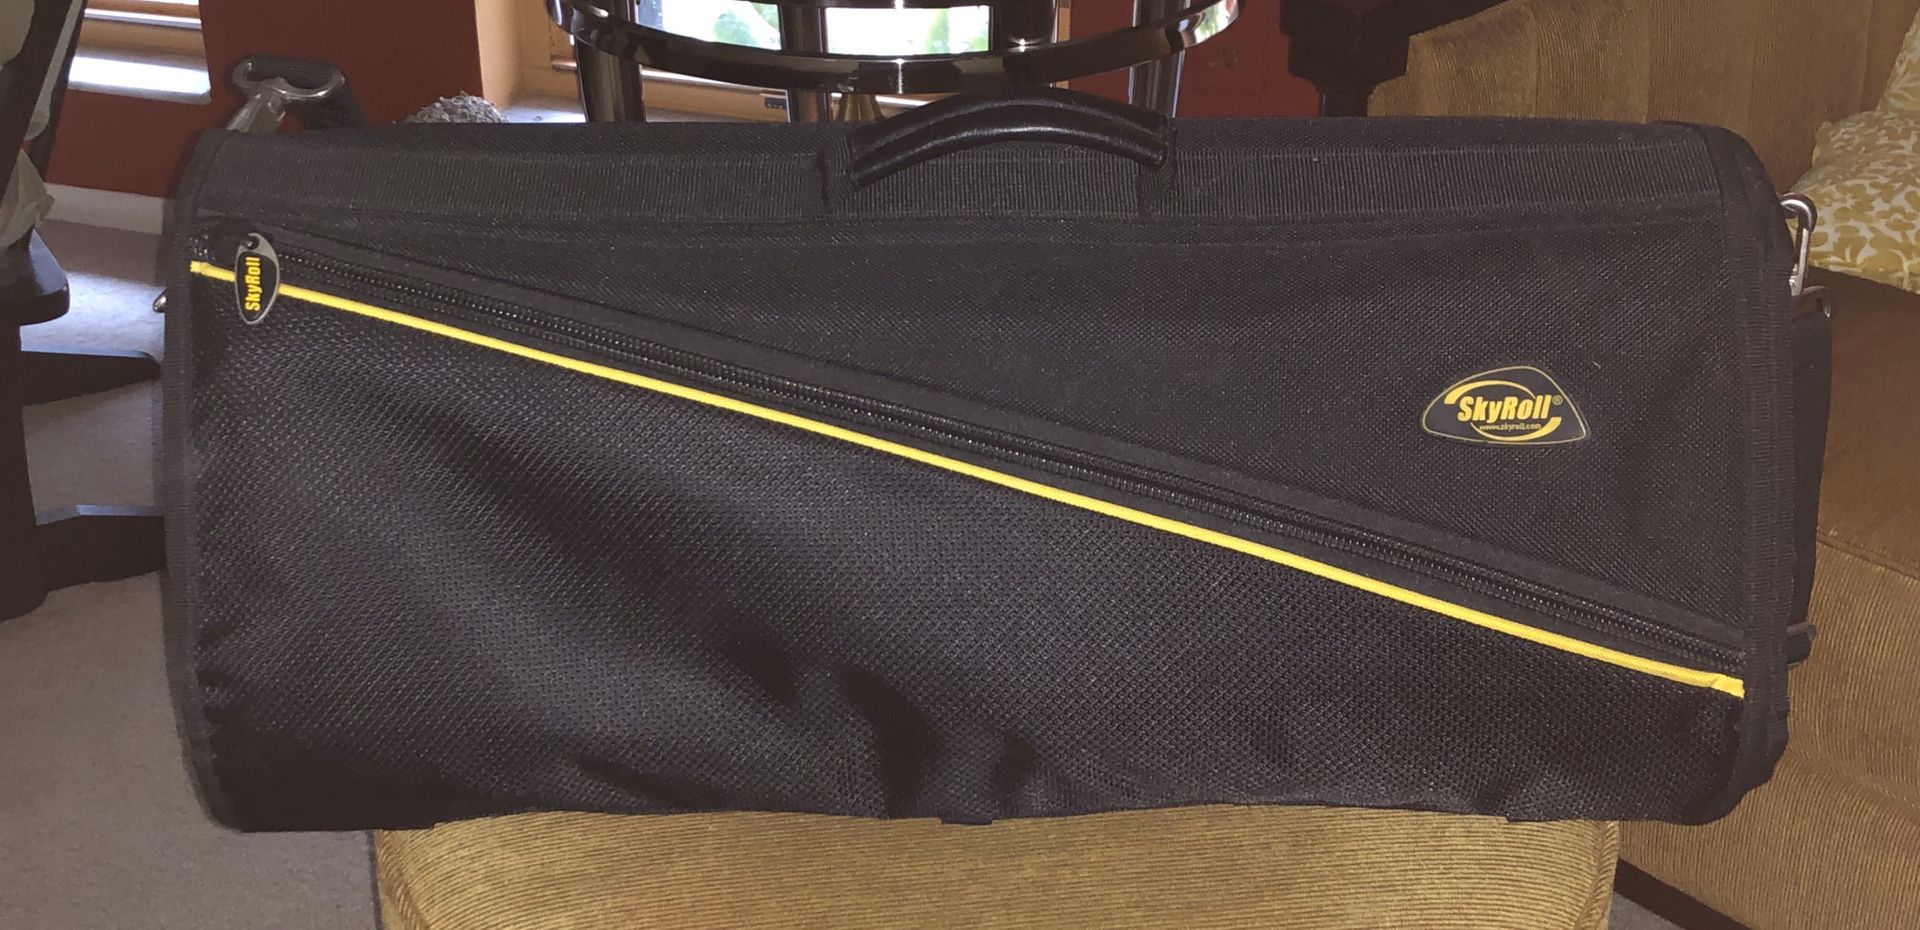 Skyroll Garment Bag Roll Up Travel Black Nylon